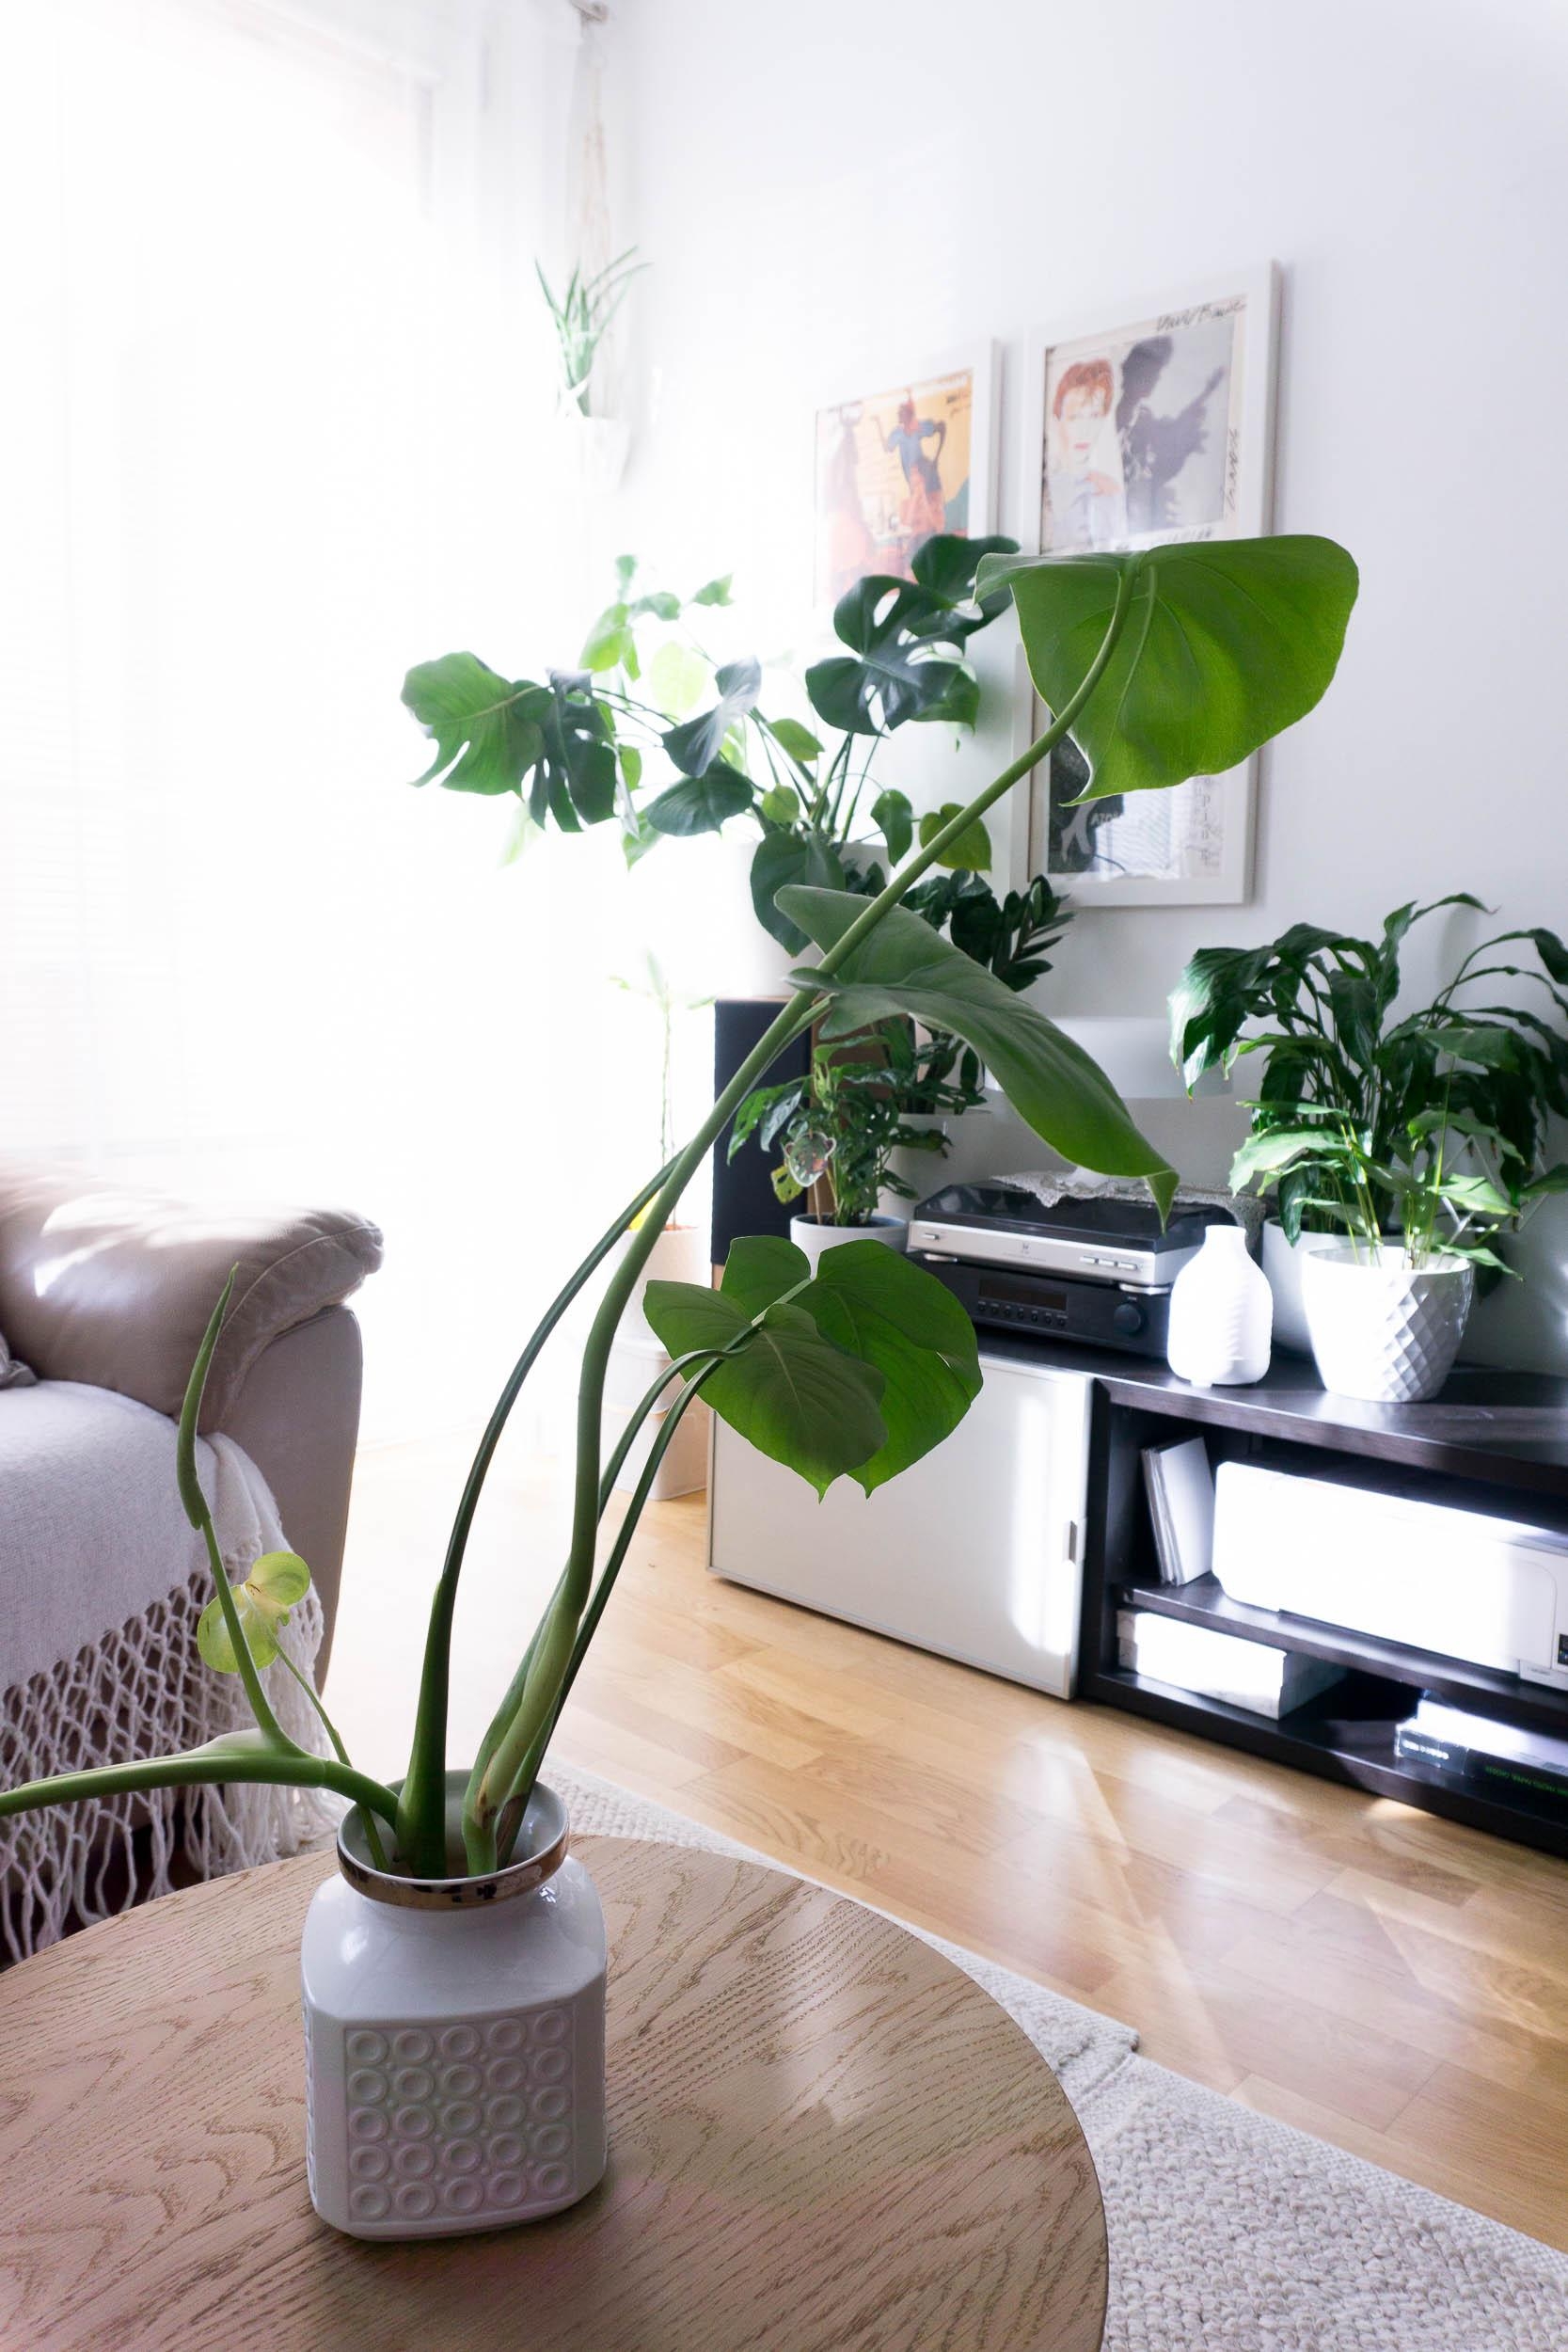 Die #Monstera in der Vase auf dem Wohnzimmer Tisch wird bald in Erde gepflanzt!
#plantlover #indoorgarden #urbangarden